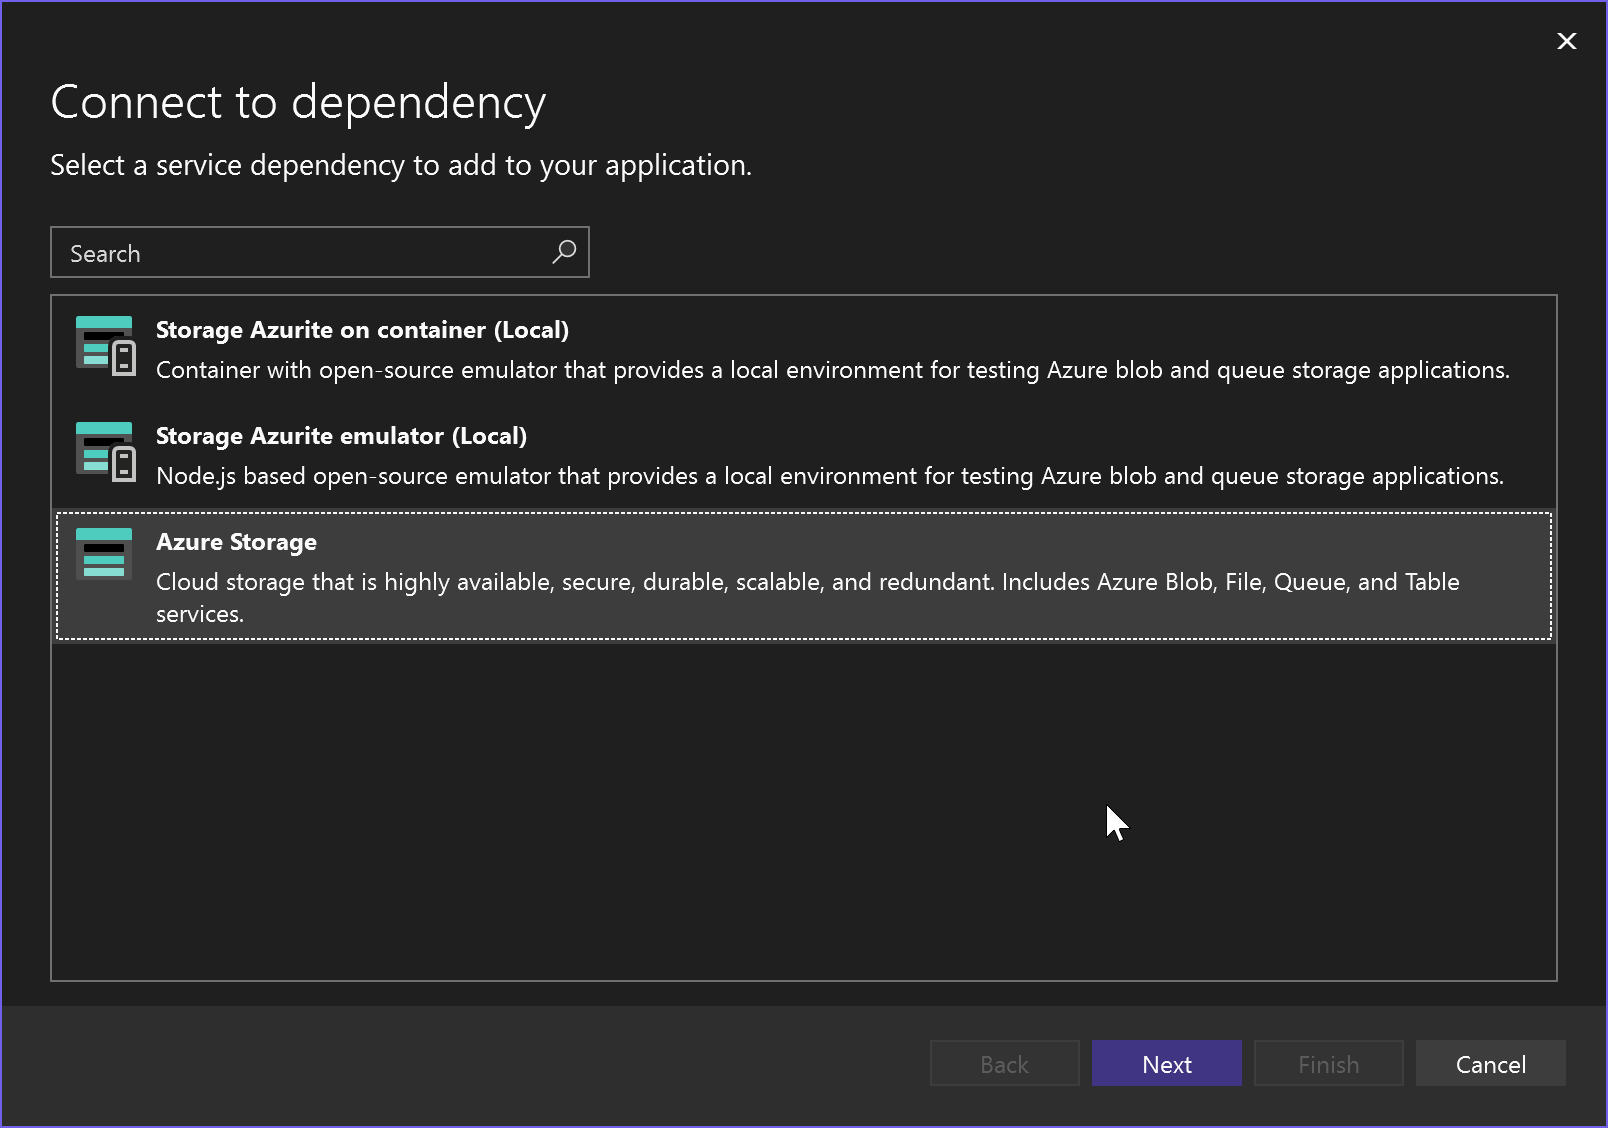 Captura de tela mostrando a conexão com a dependência – Armazenamento do Microsoft Azure.